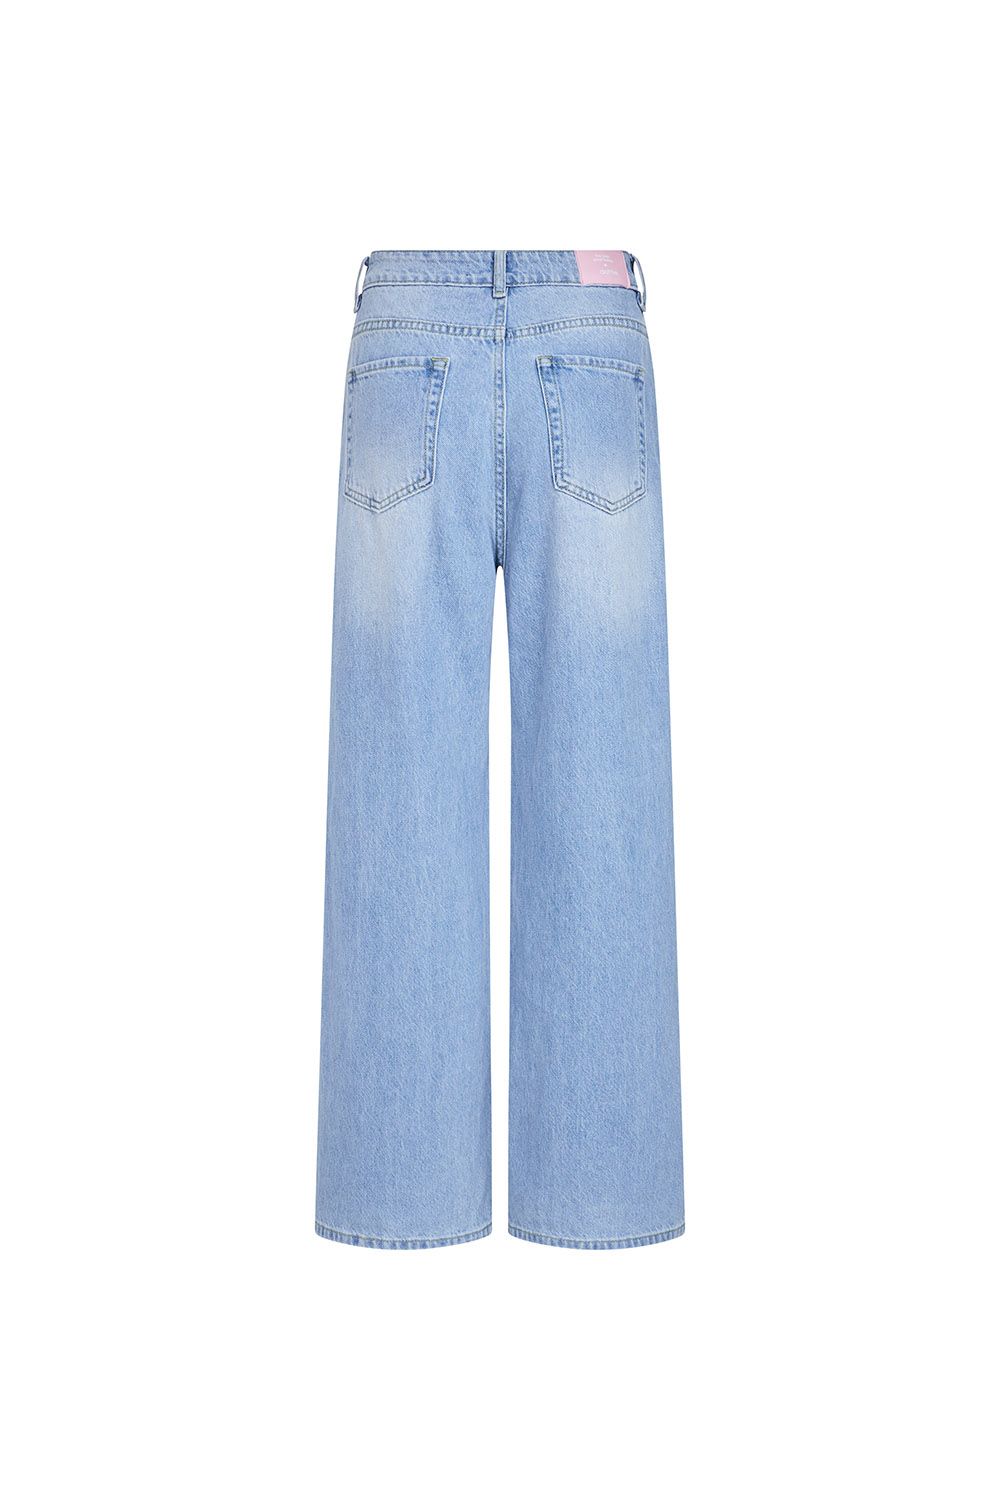  Quần jeans dài ống rộng - Xanh nhạt - Q0310 